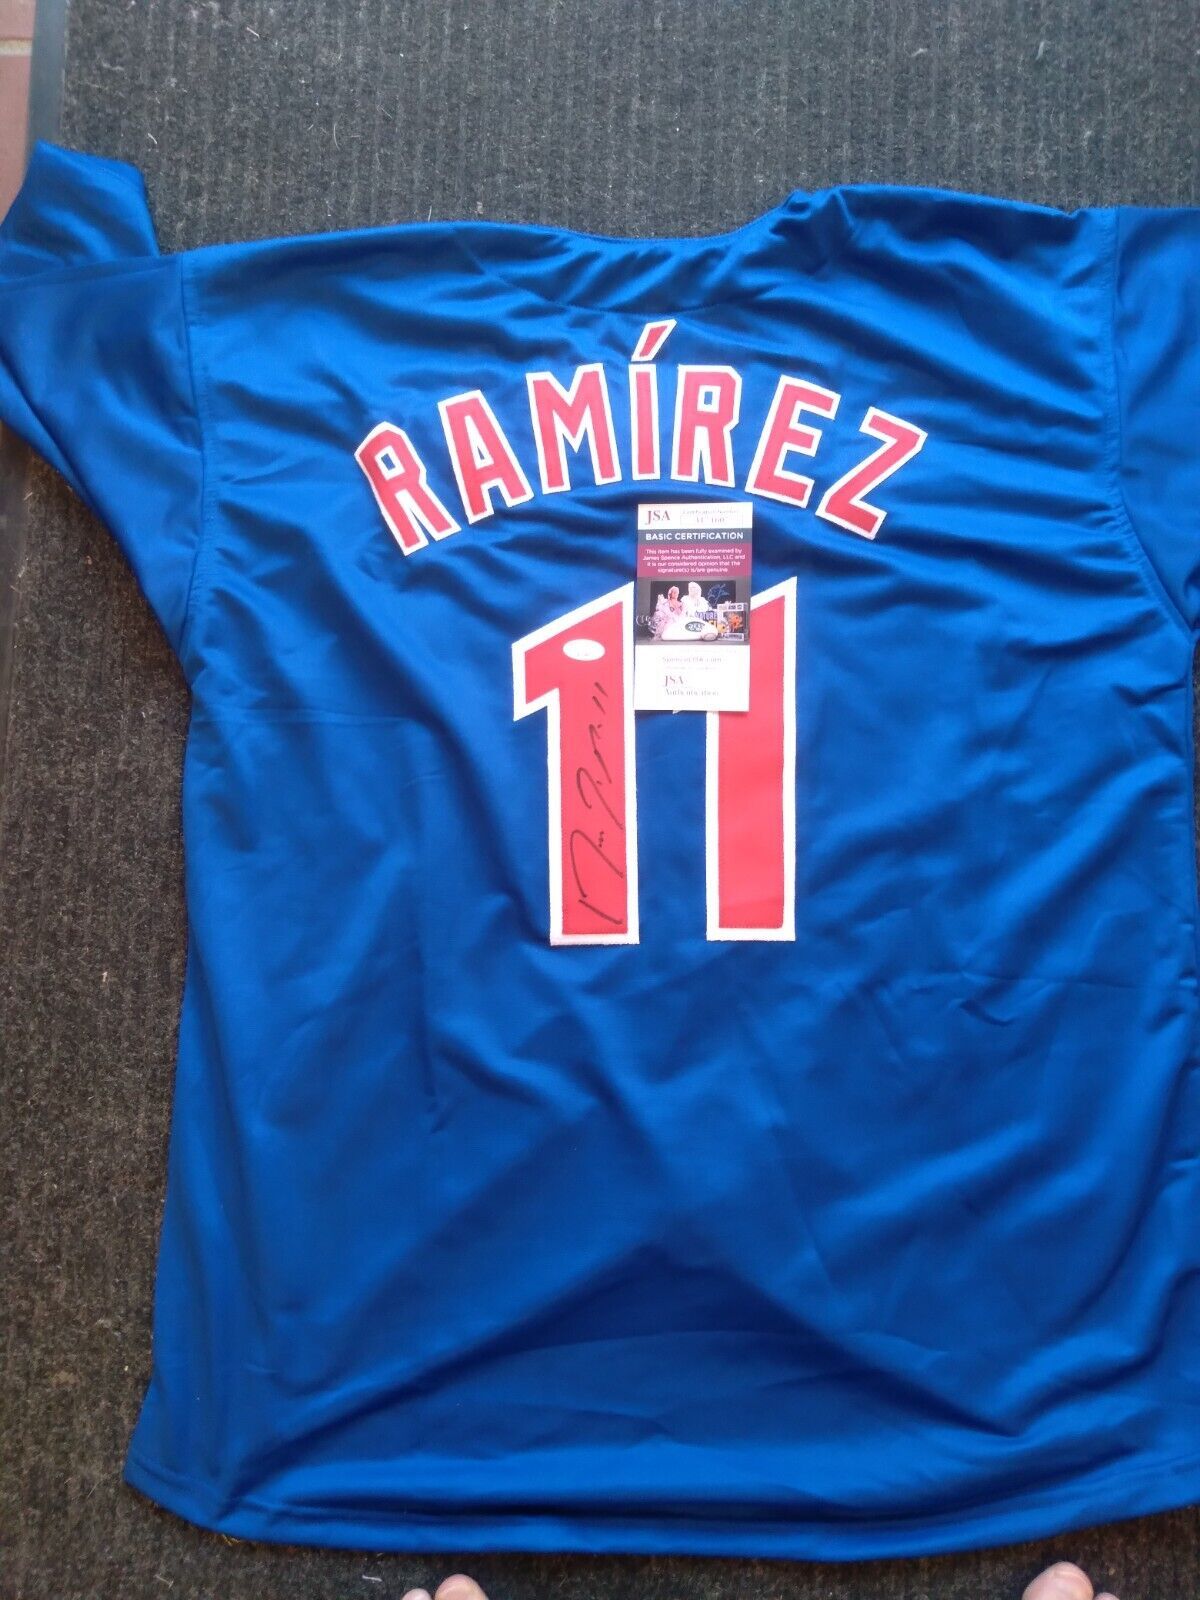 Jose Ramirez Signed Jersey (JSA)